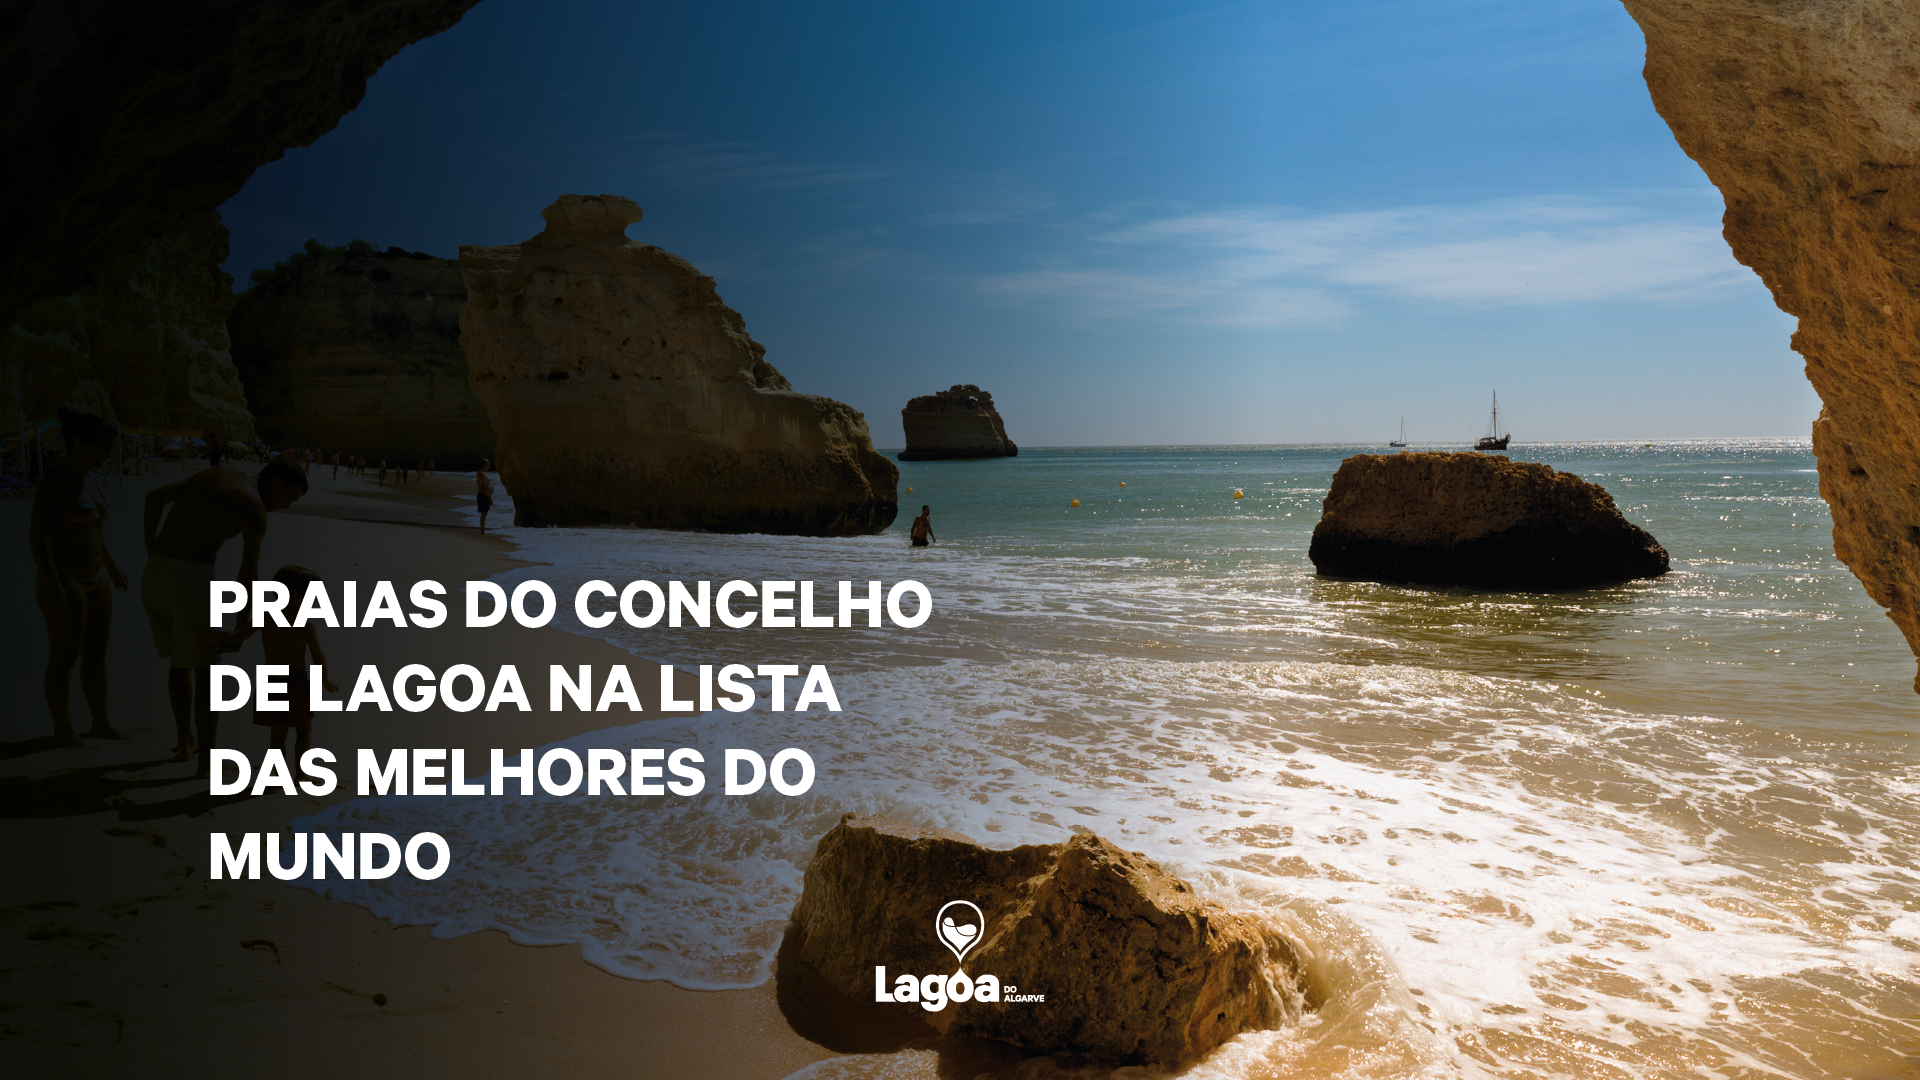 Praias do concelho de Lagoa na lista das melhores do mundo